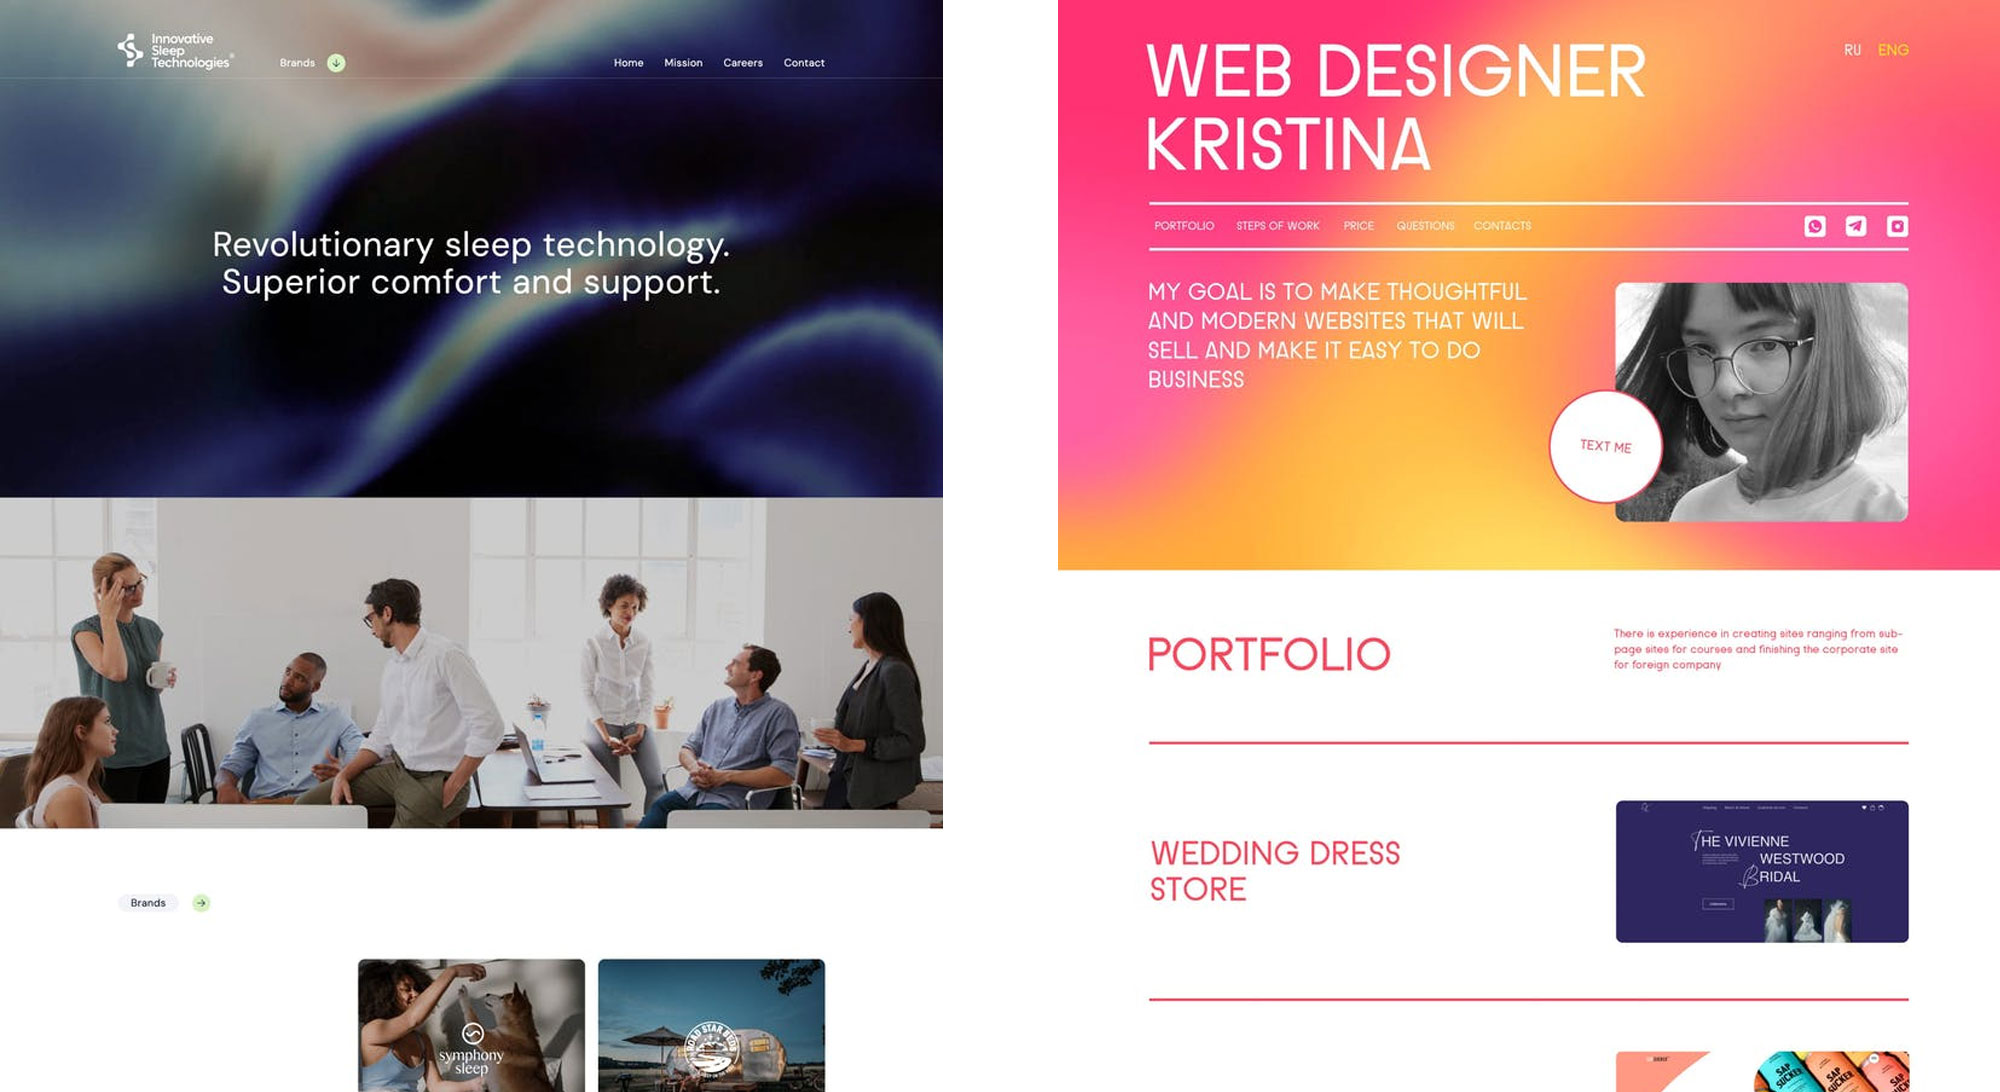 Designkontraste im Webdesign: So lenkst du die Aufmerksamkeit deiner Nutzer 9